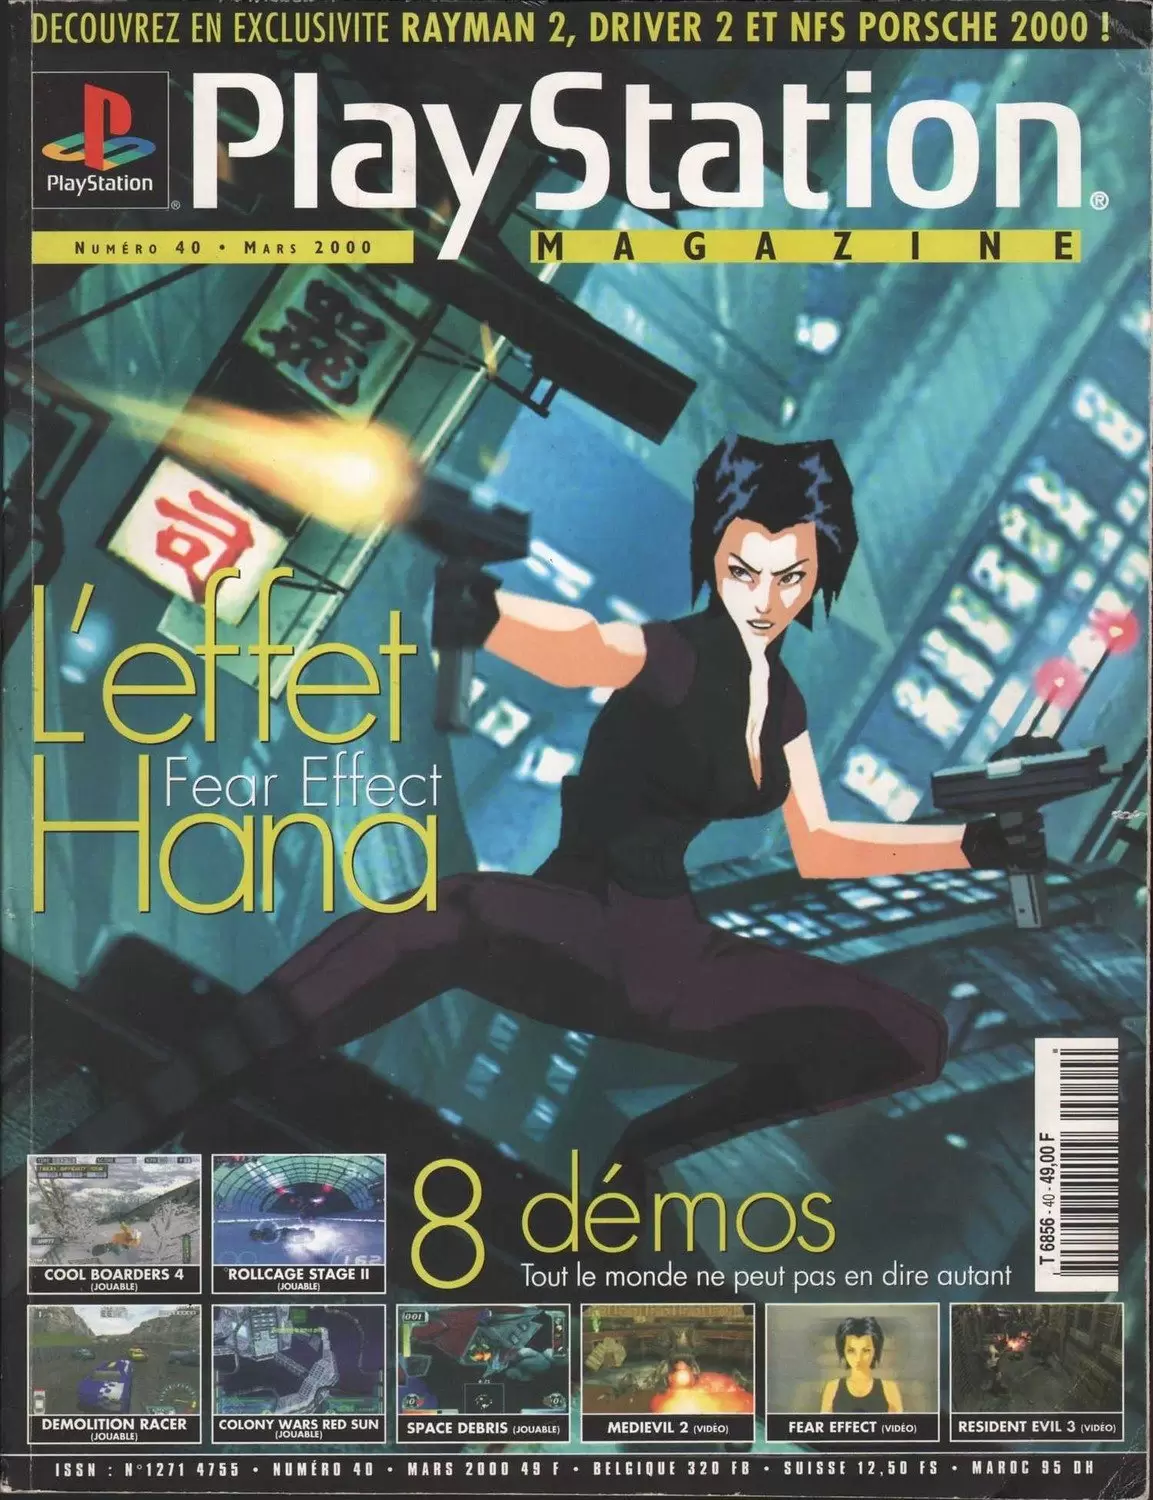 Playstation Magazine - Playstation Magazine #40